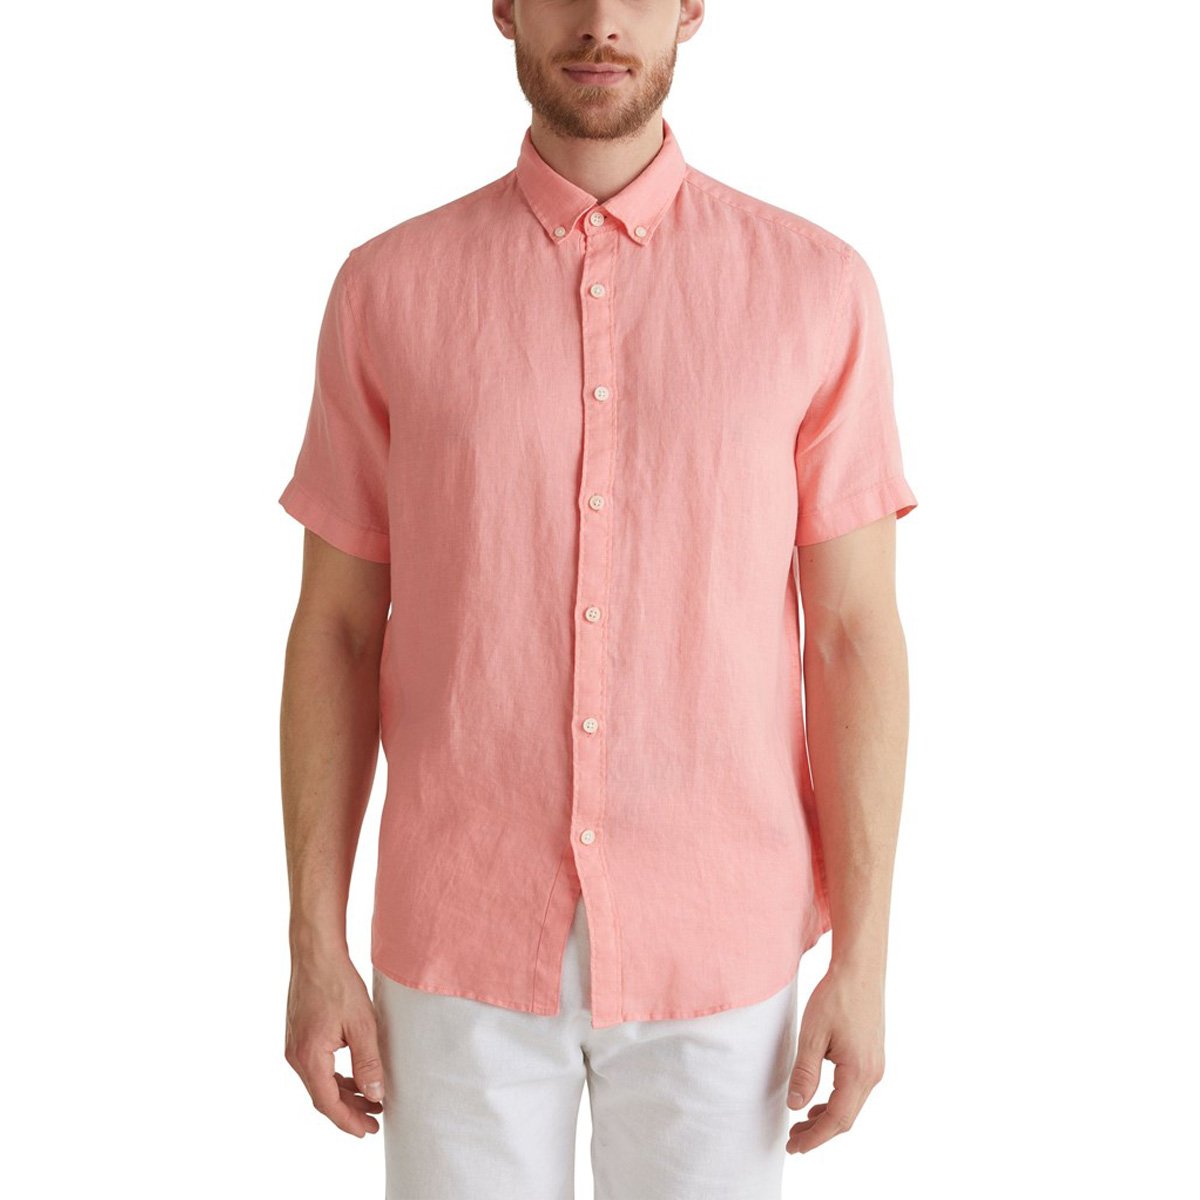 Sandalen Schep Sjah Esprit Mens 100% Linen Shirt Short Sleeve Button Down Top | eBay